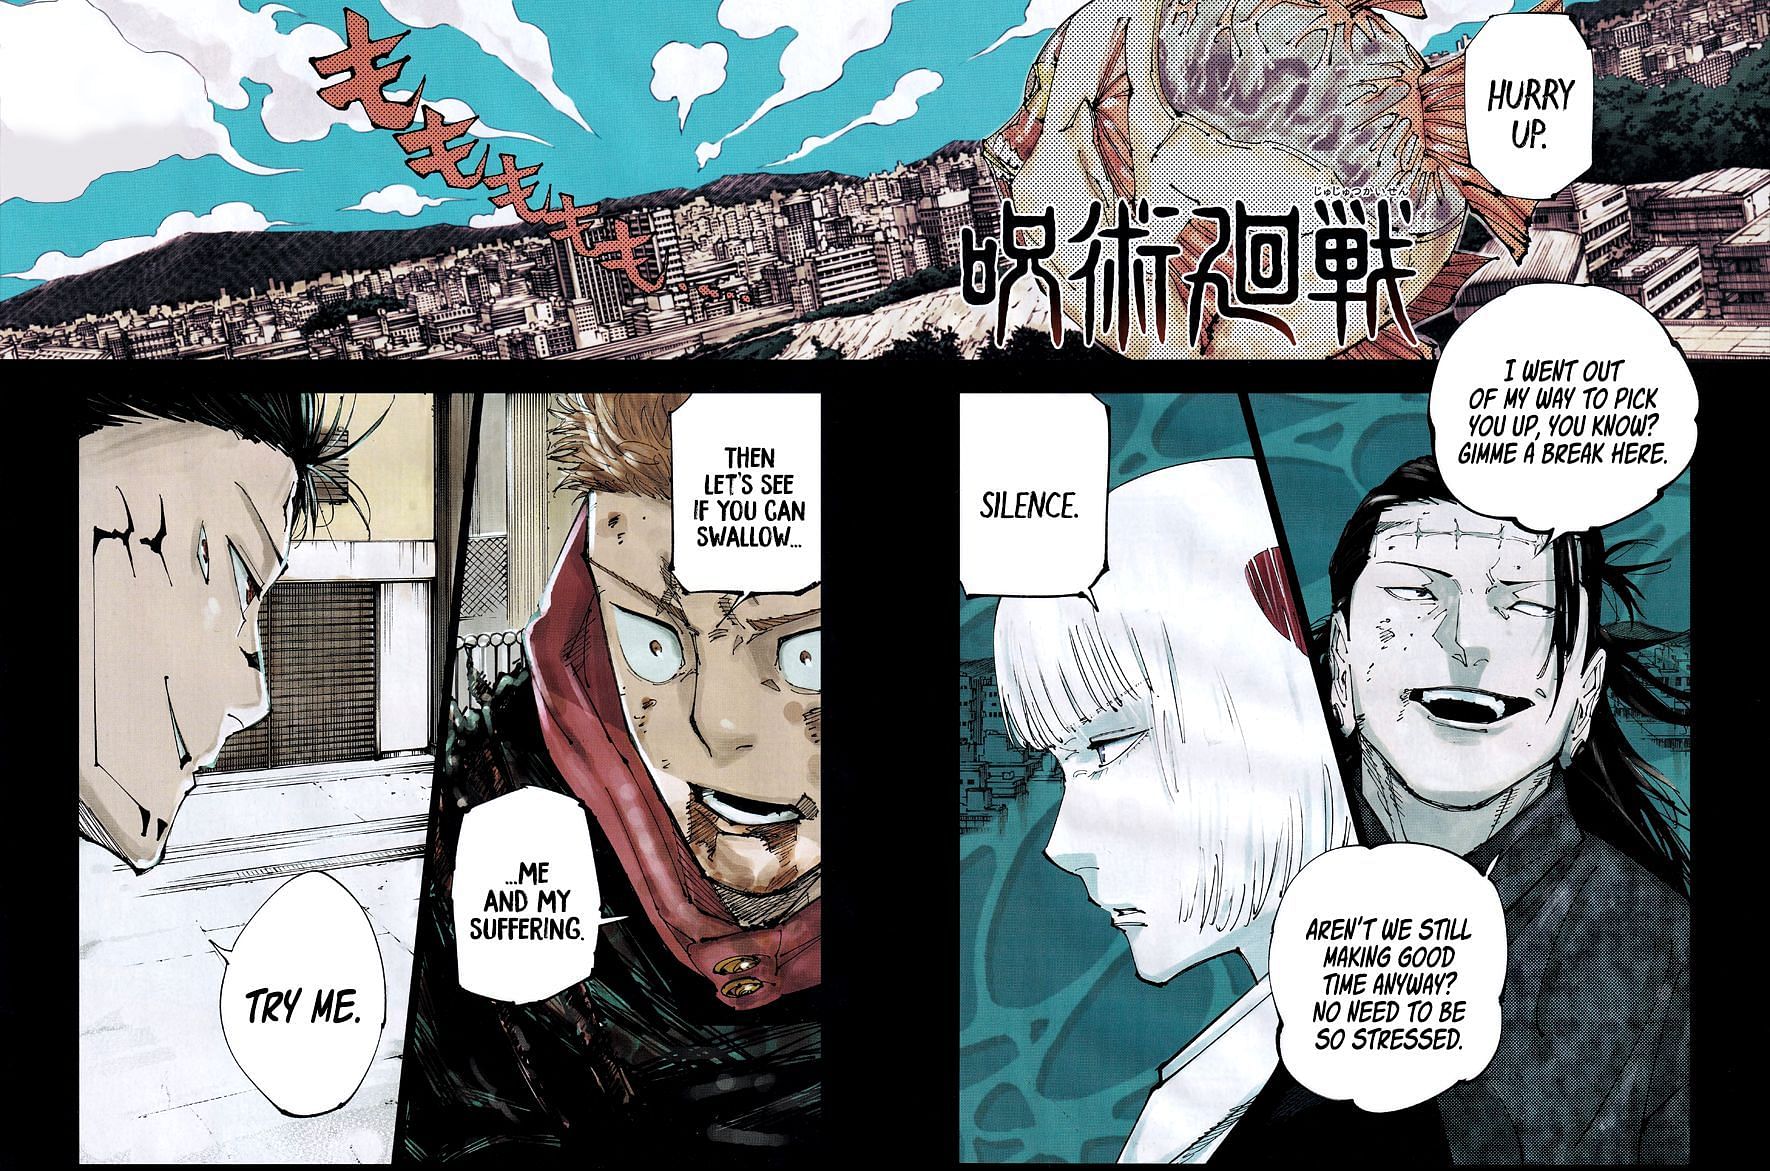 Jujutsu Kaisen chapter 215 lead color page (Image via Shueisha)